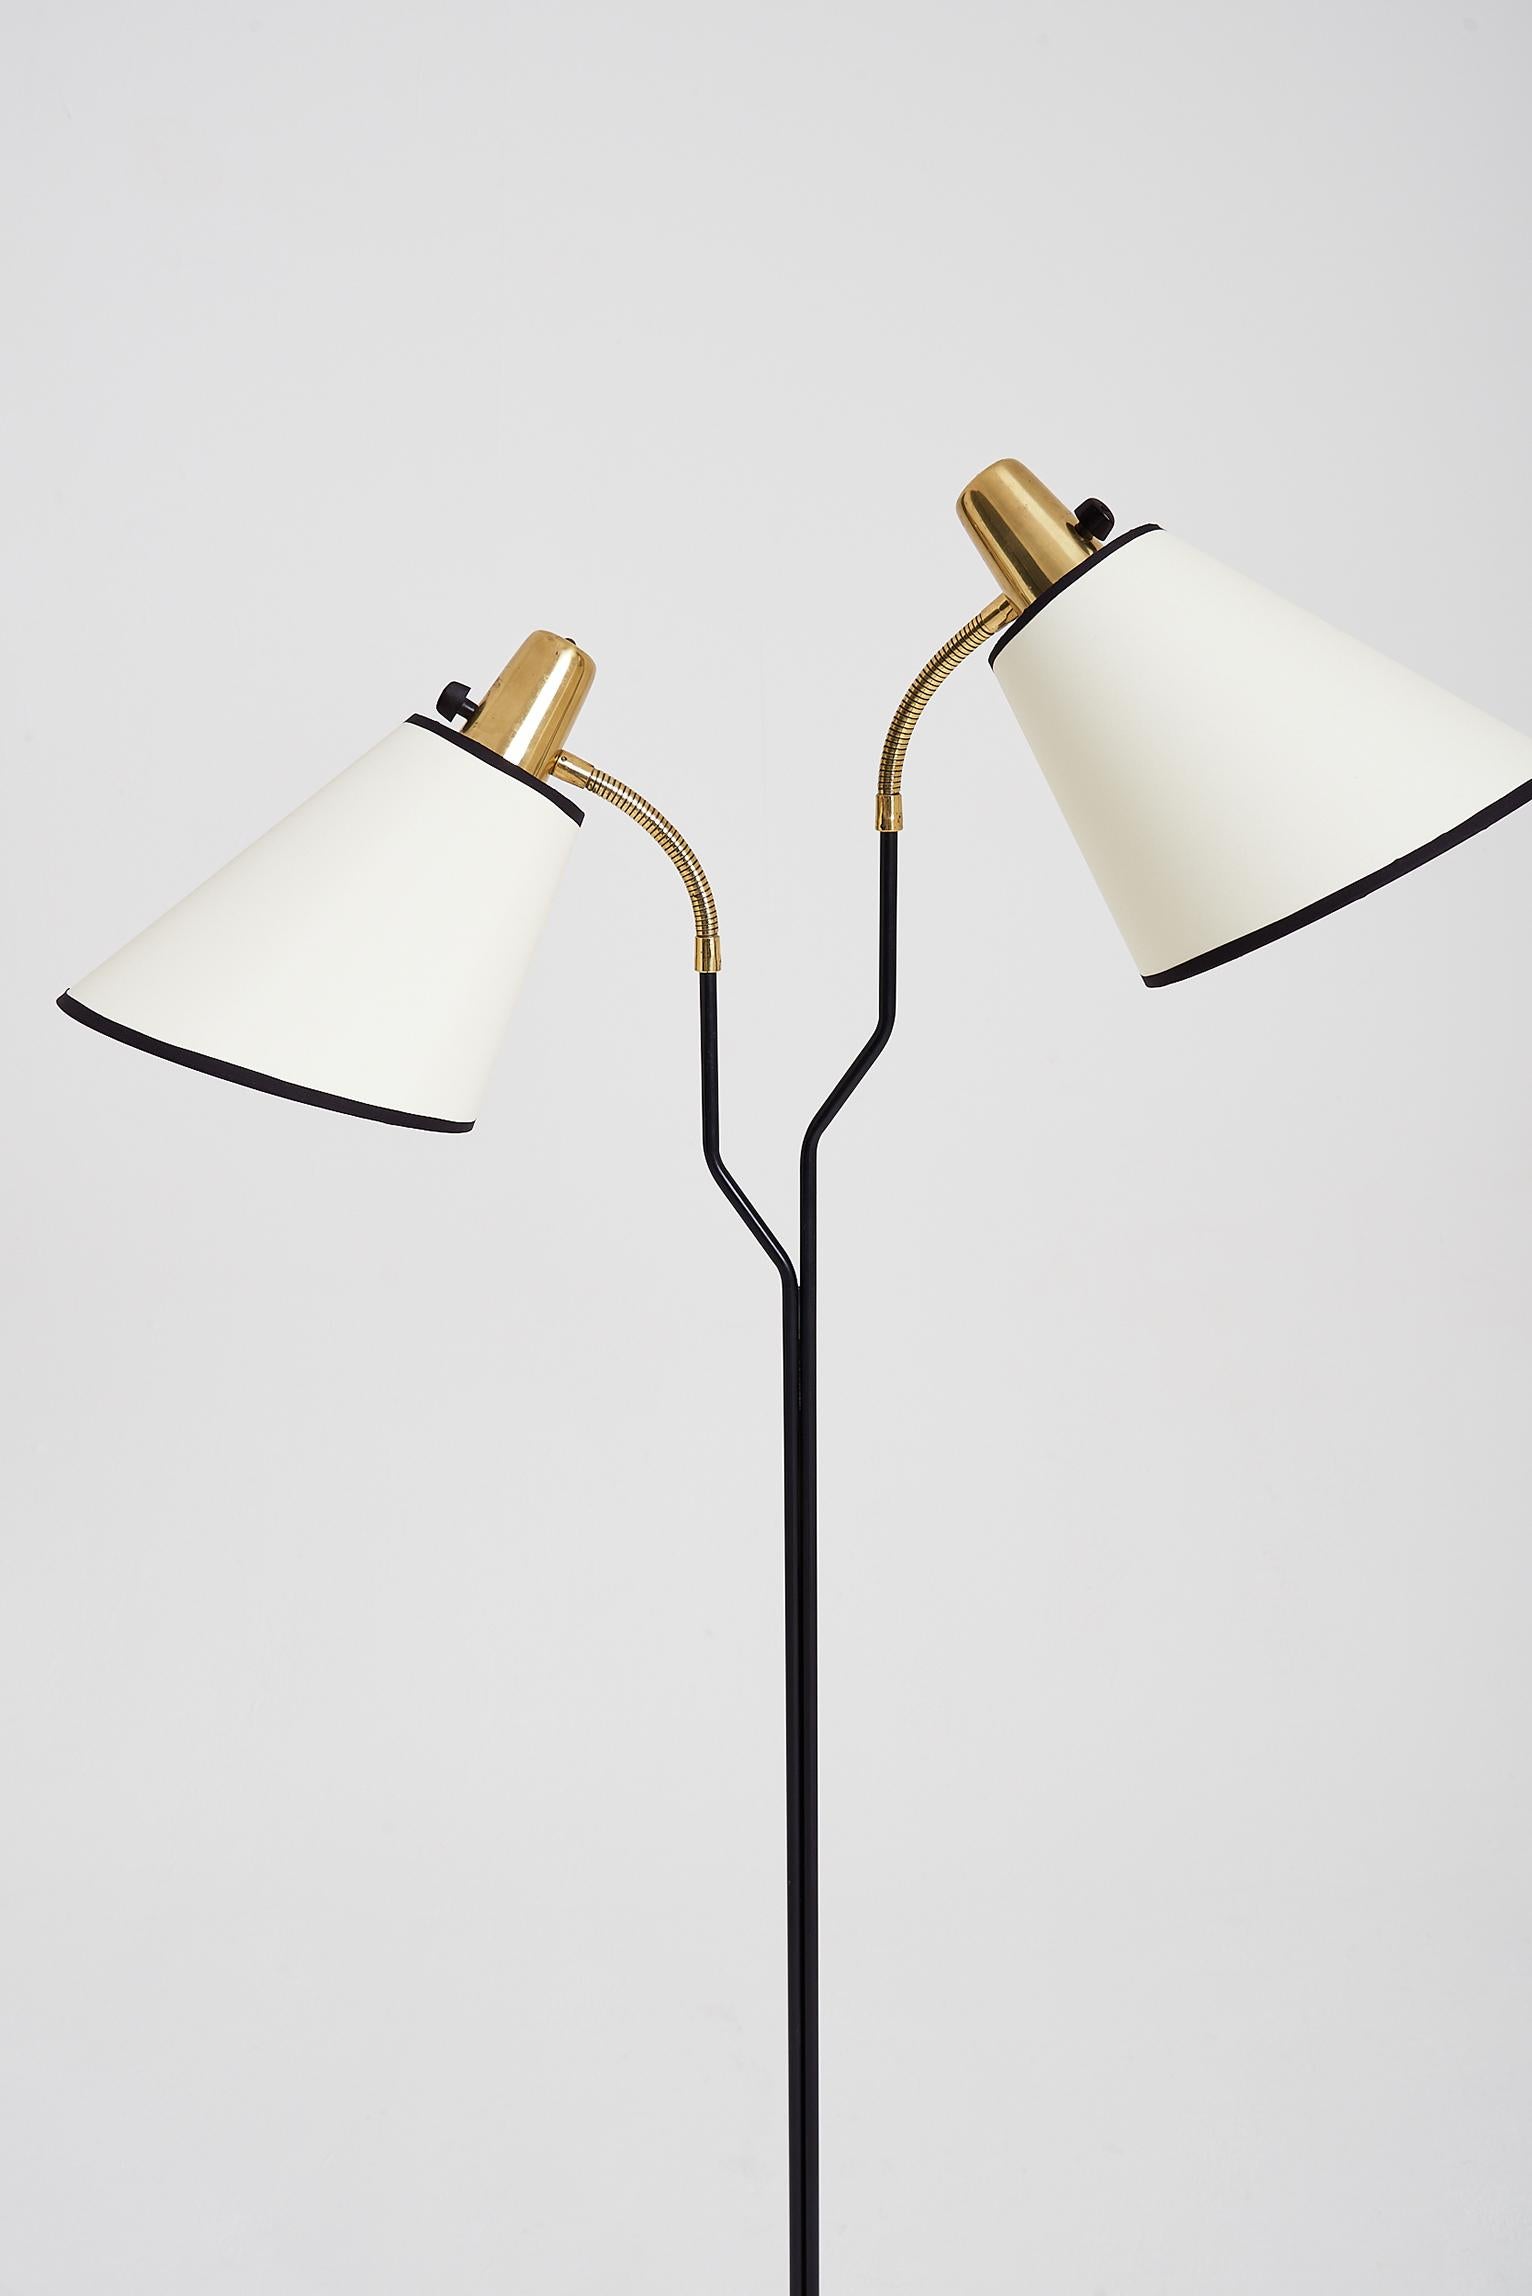 Brass and Black Two-Armed Floor Lamp by Eskilstuna Elektrofabrik 1